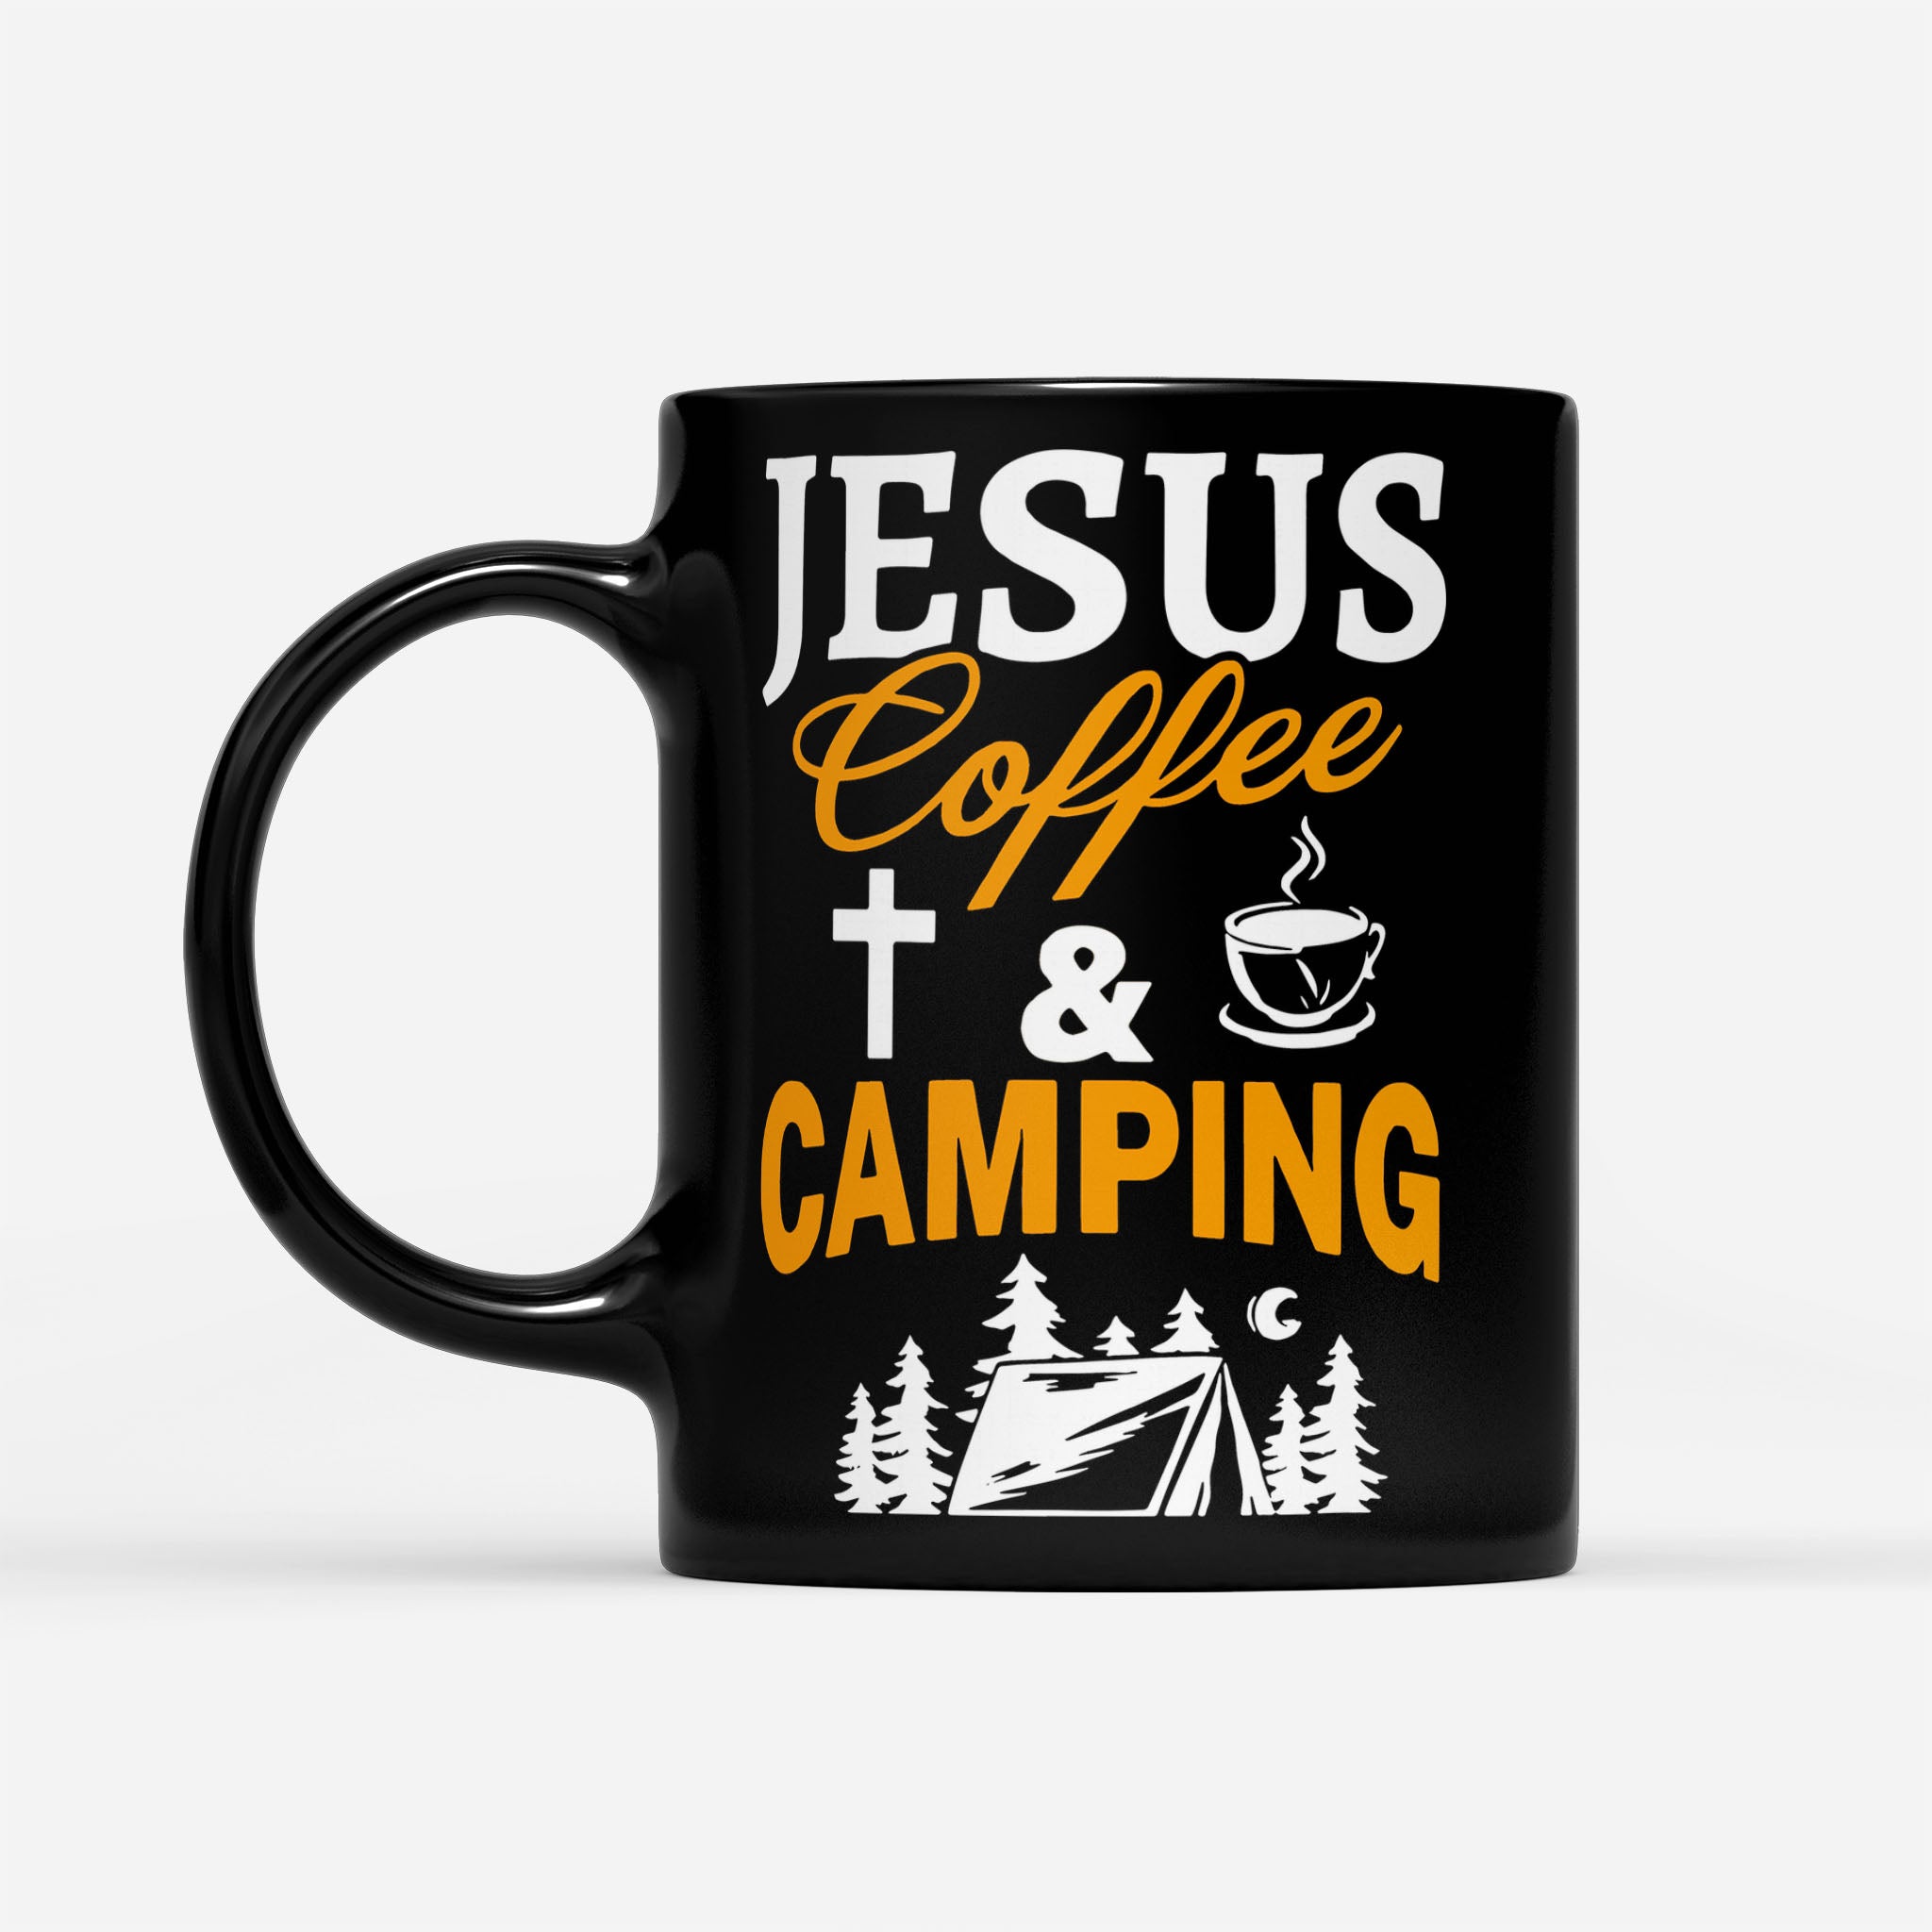 Jesus Coffee And Camping - Black Mug